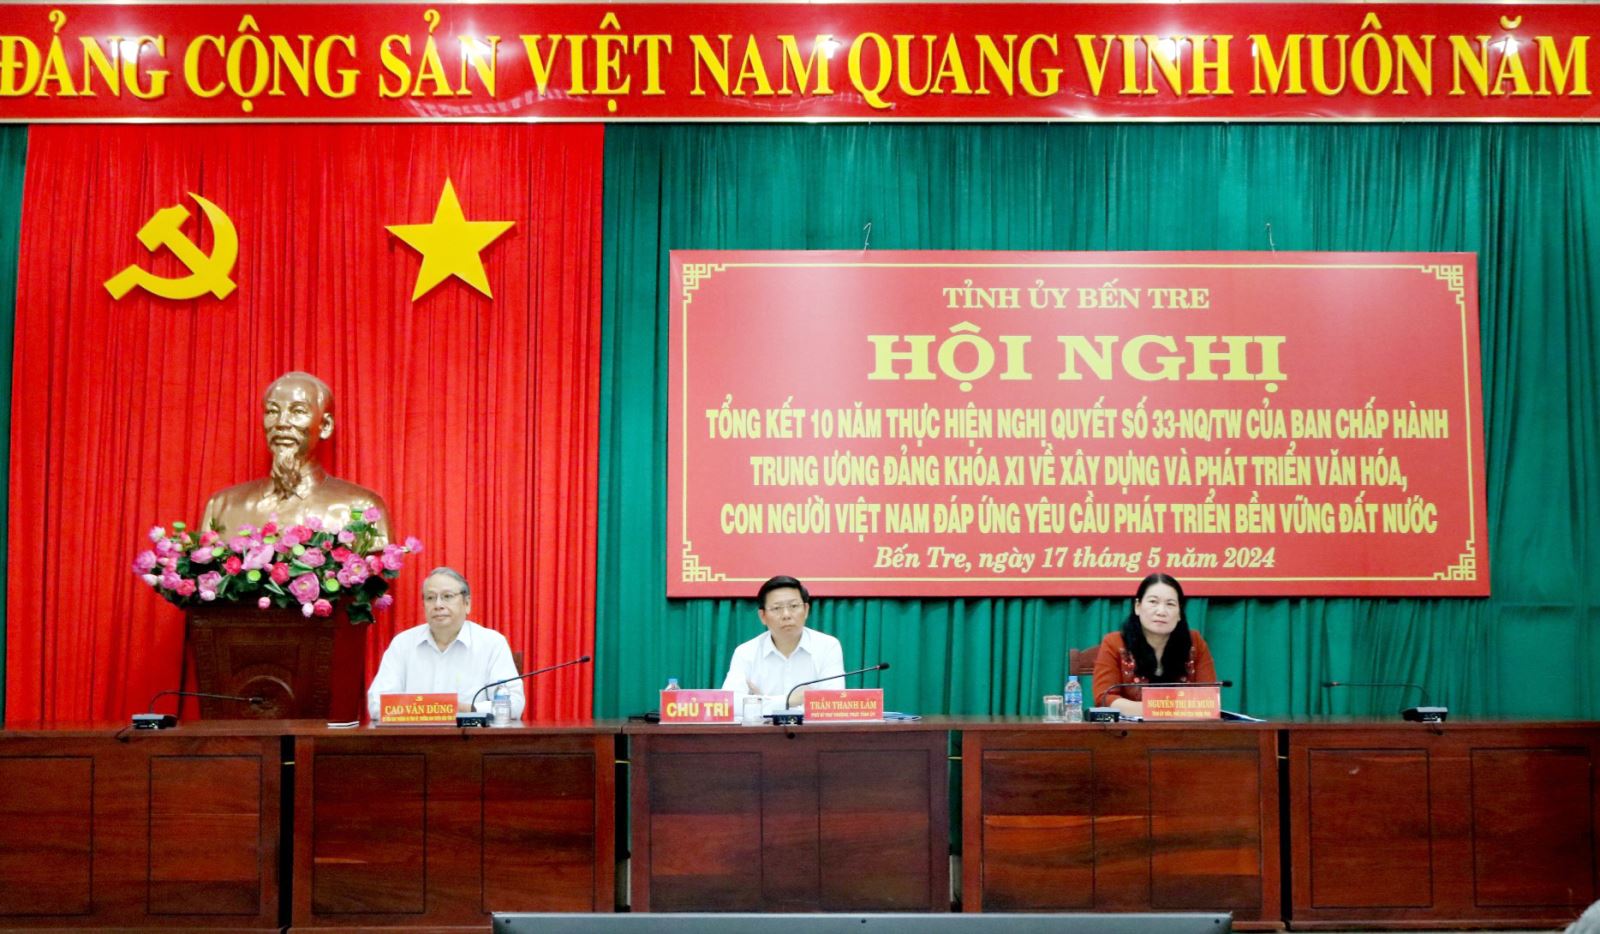 Hội nghị tổng kết 10 năm thực hiện Nghị quyết số 33-NQ/TW, ngày 09/6/2014 của Ban Chấp hành Trung ương Đảng khóa XI về xây dựng và phát triển văn hóa, con người Việt Nam đáp ứng yêu cầu phát triển bền vững đất nước